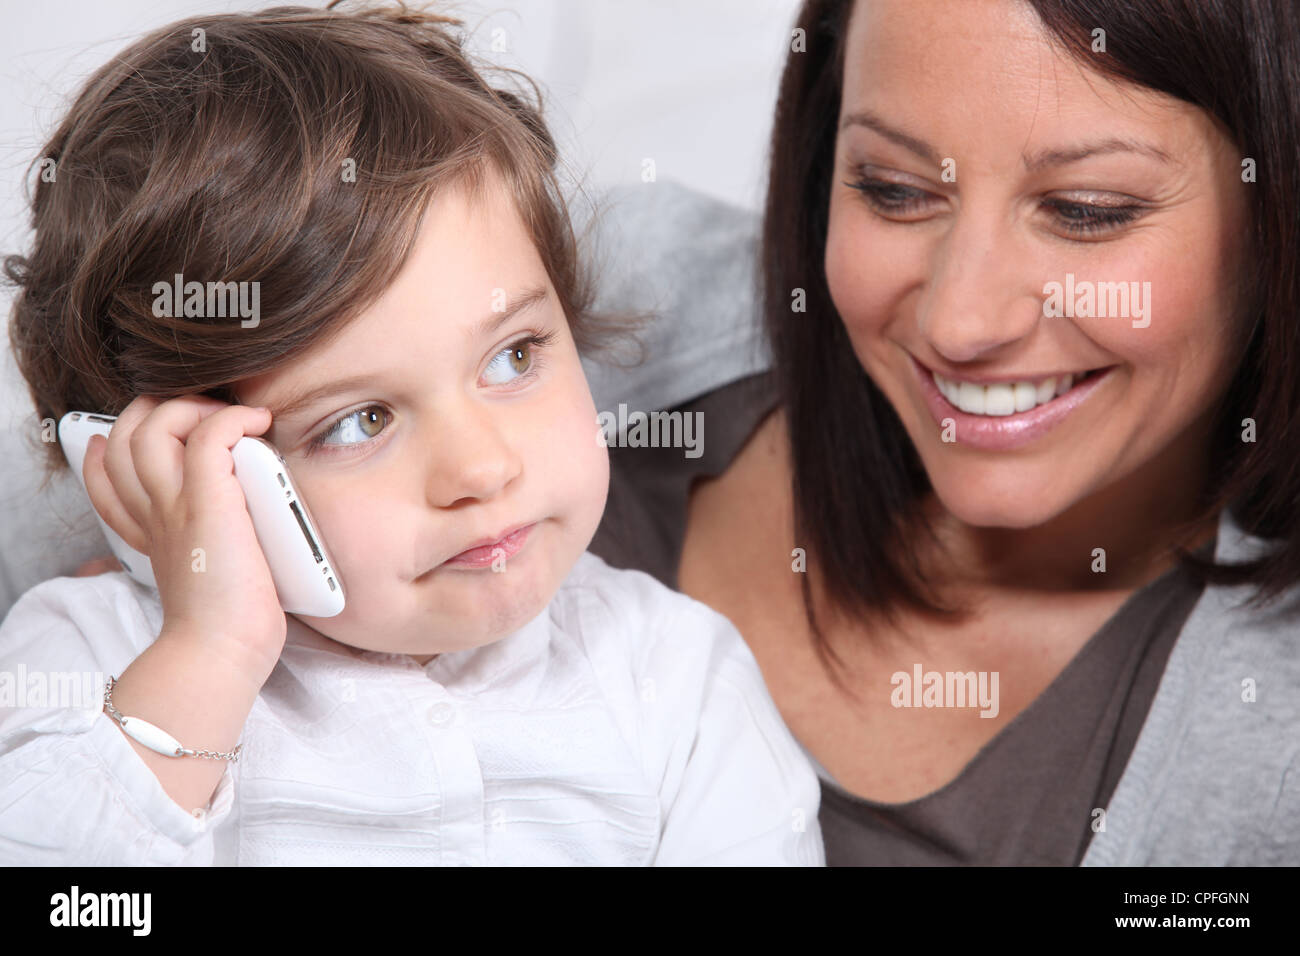 Разблокированный телефон мамы. Мама с телефоном. Фото с маминого телефона. Картинки на телефон мама с детьми. Ребенок играющий и мама с телефоном.